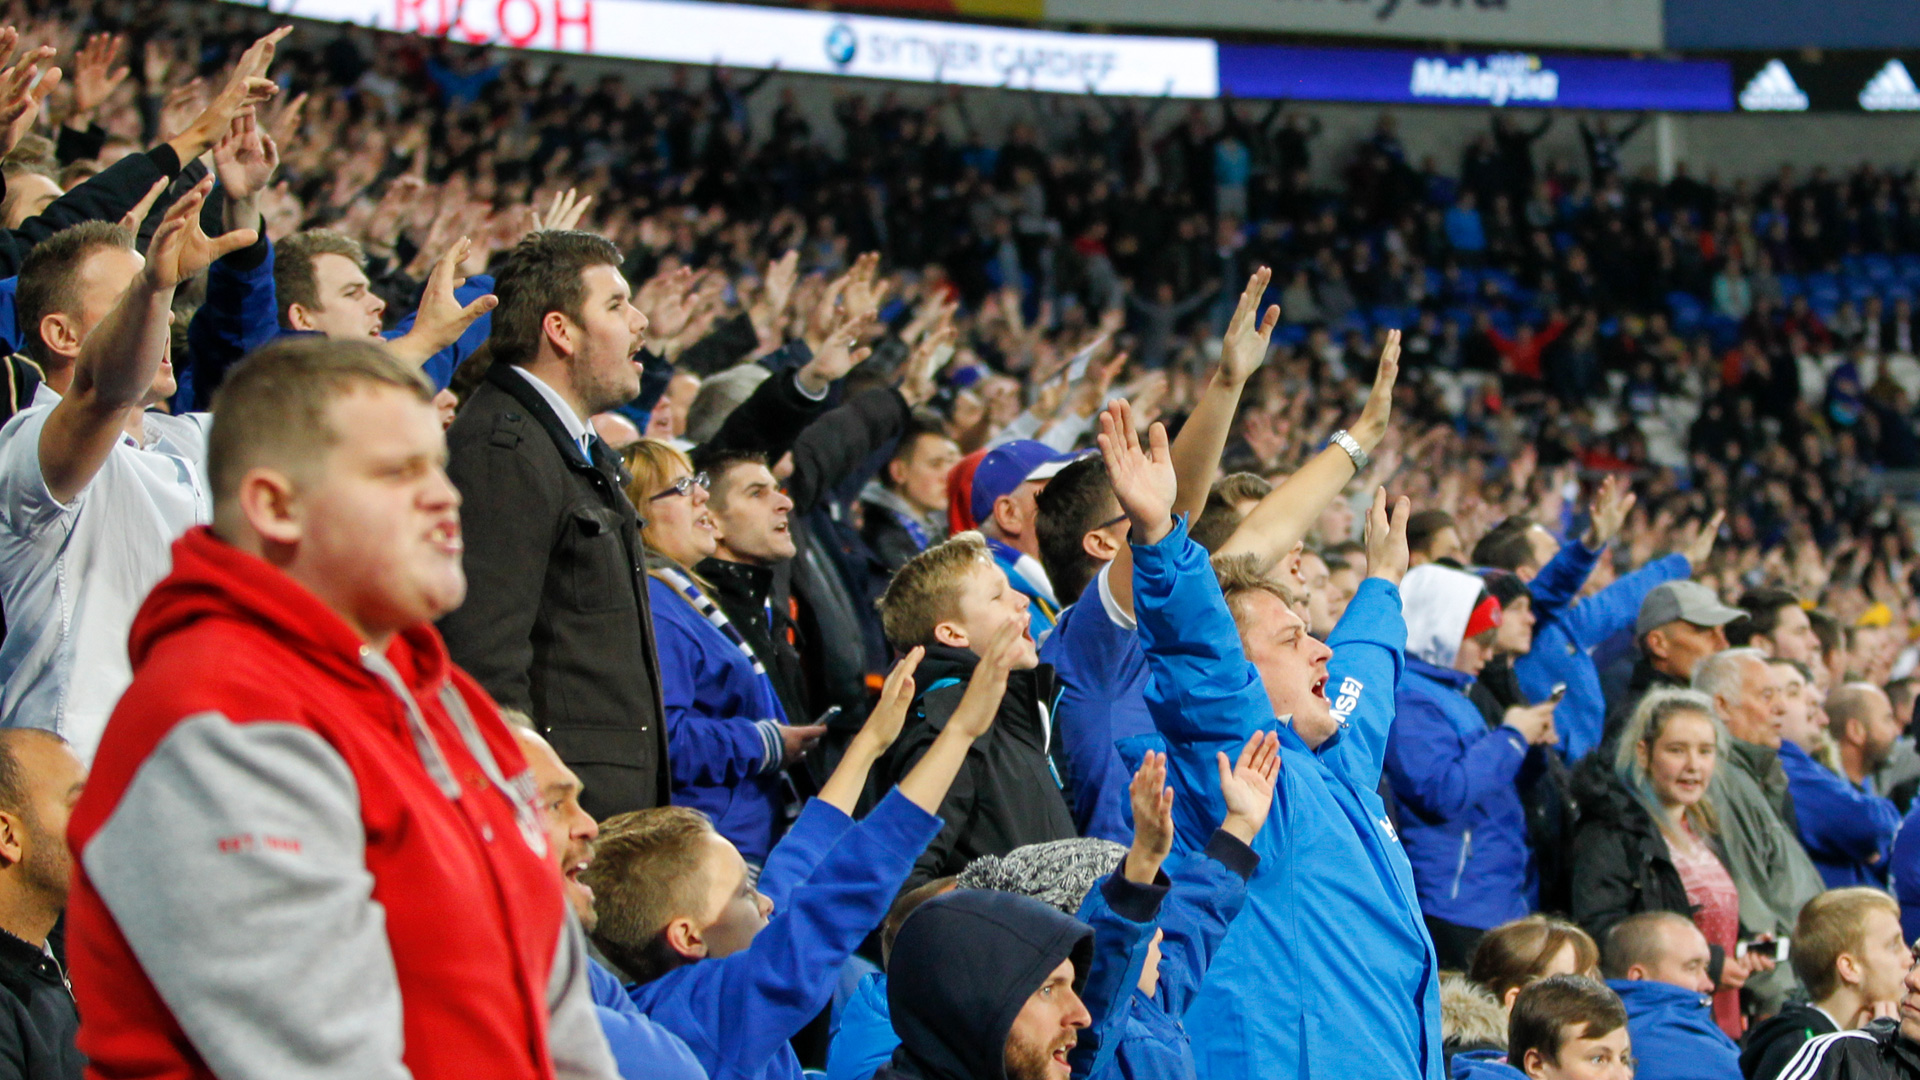 The Bluebirds celebrate the win over Bristol City...